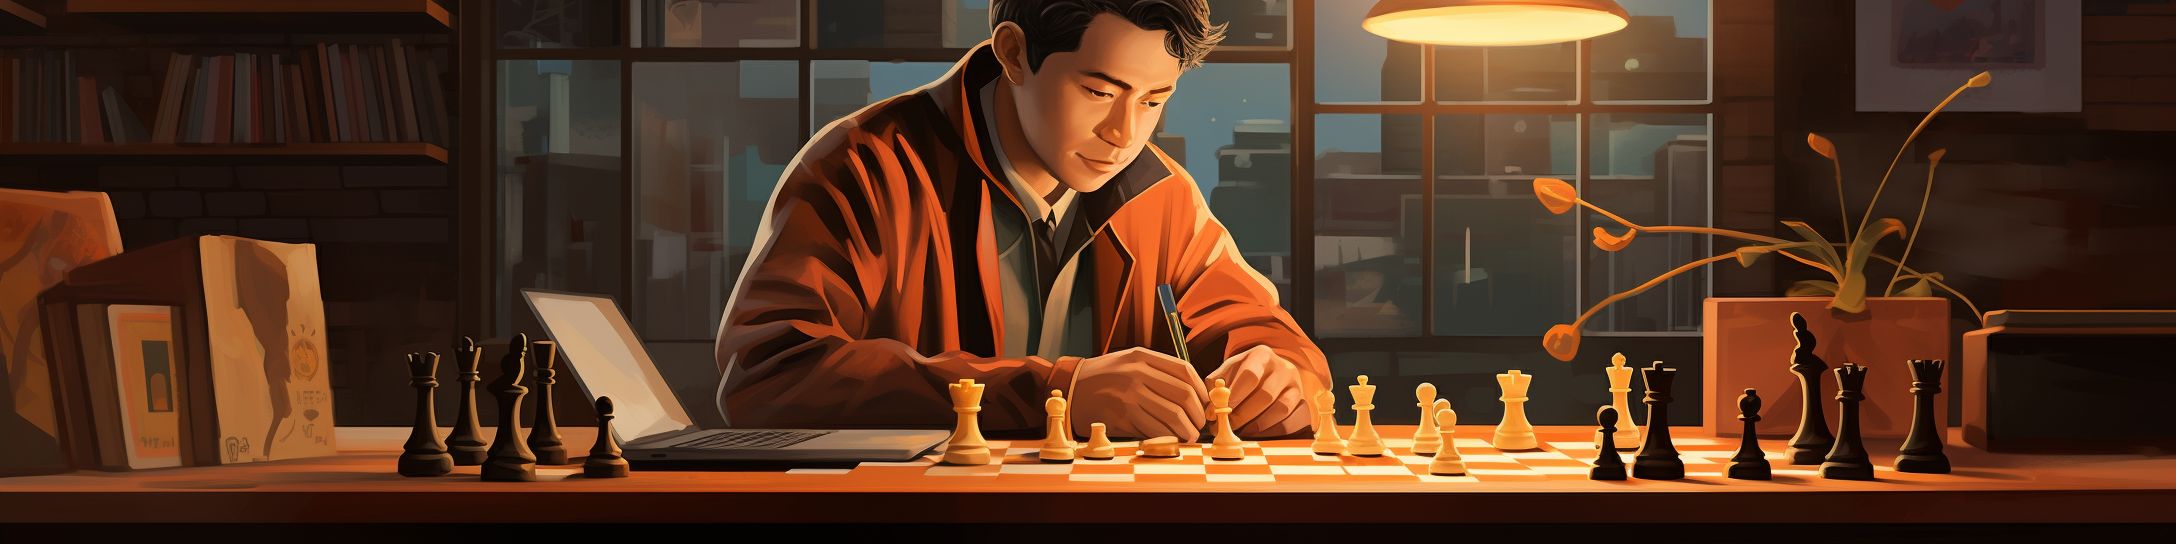 Hikaru Nakamura sur YouTube: une démarche pédagogique des échecs